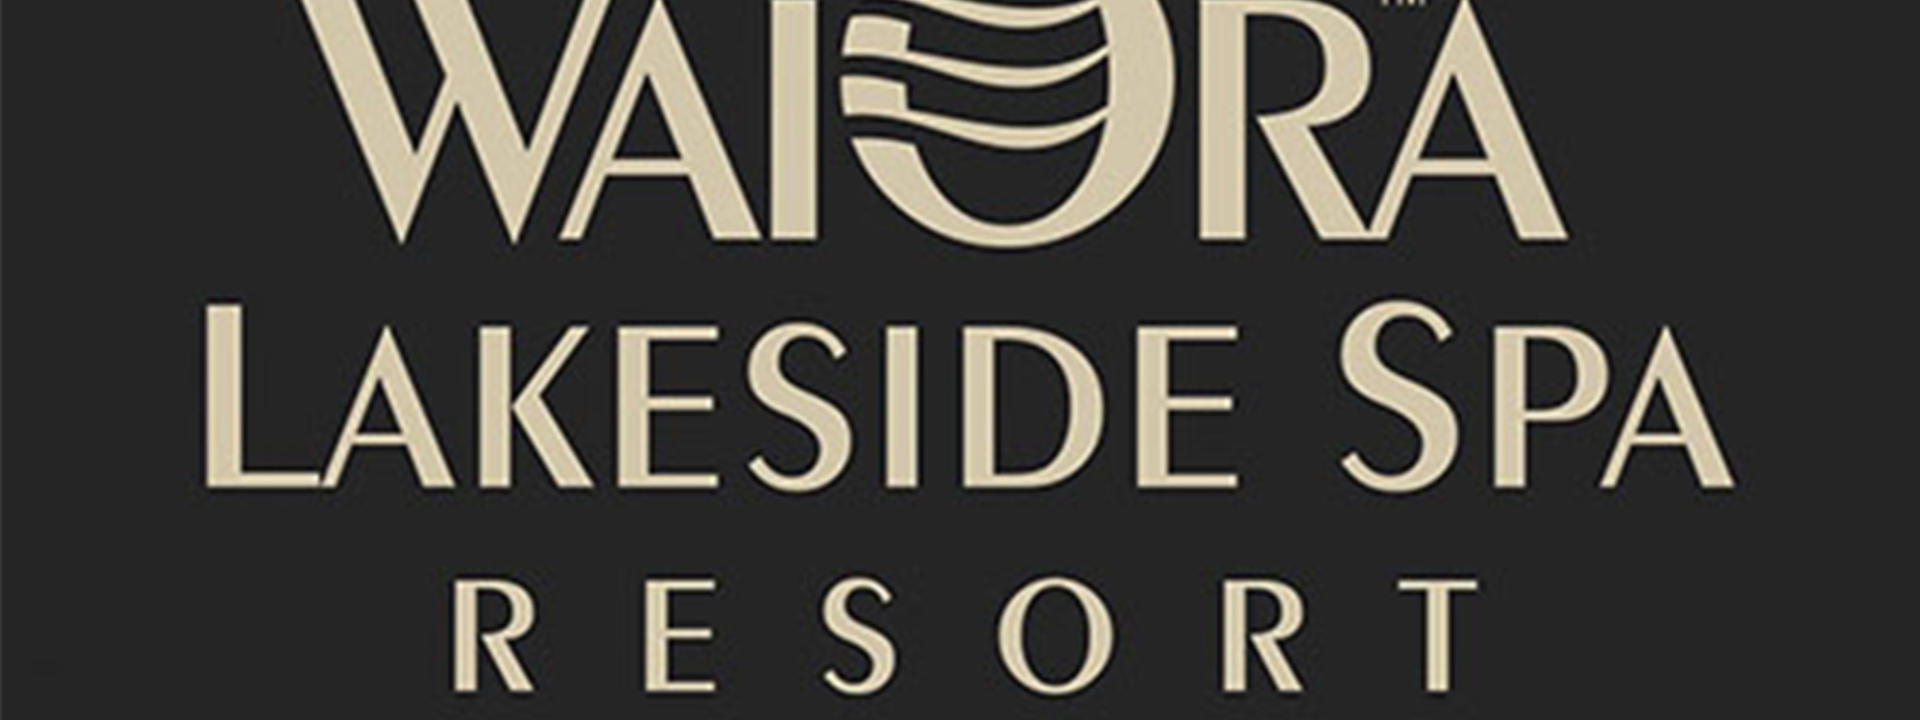 wai-ora-resort-logo.jpg